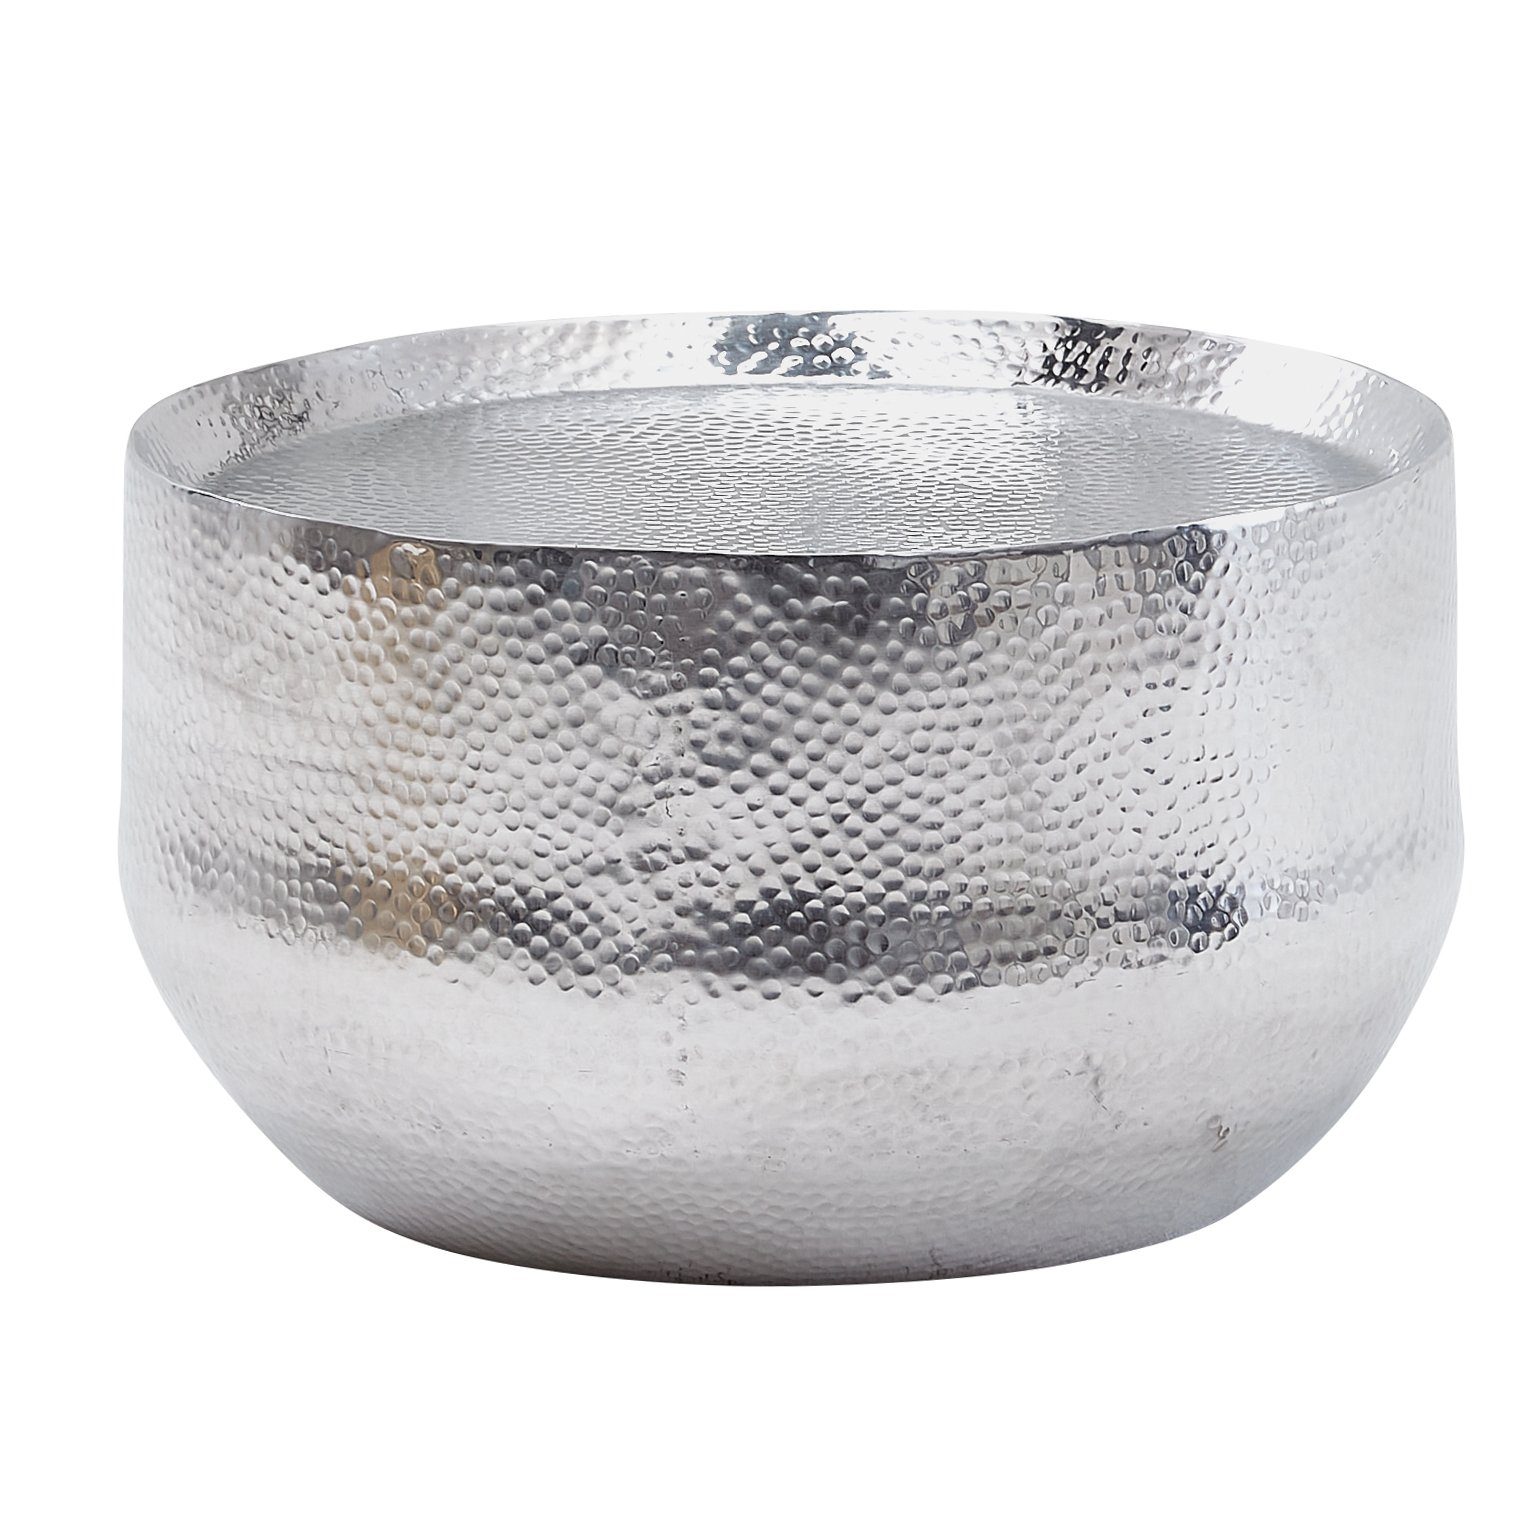 (Aluminium Silber | Hammerschlag), Kaffeetisch Sofatisch 60x60x35cm Silber Silber Orientalisch FB30286 Wohnzimmertisch Silber Couchtisch Rund, FINEBUY |